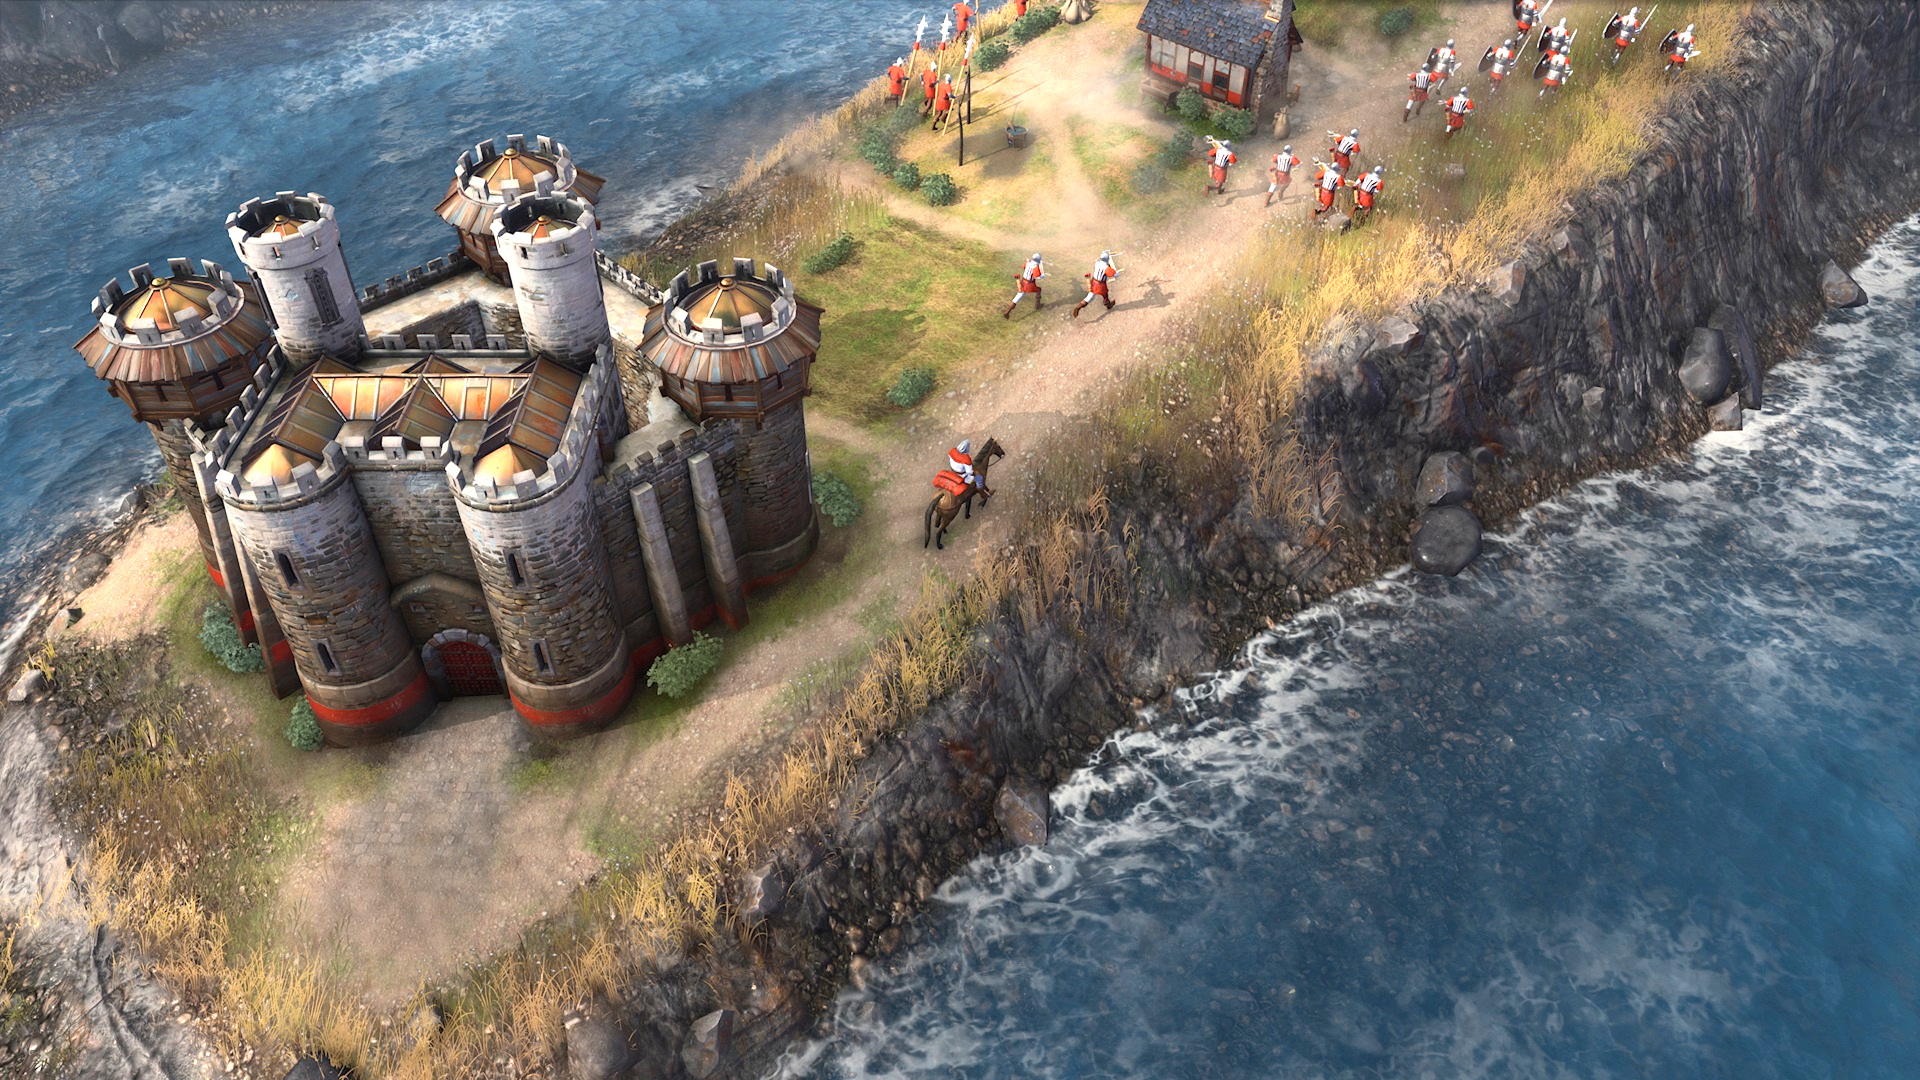 ベスト ストラテジー ゲーム: Age of Empires 4 で数人の騎兵隊が城から離れていく